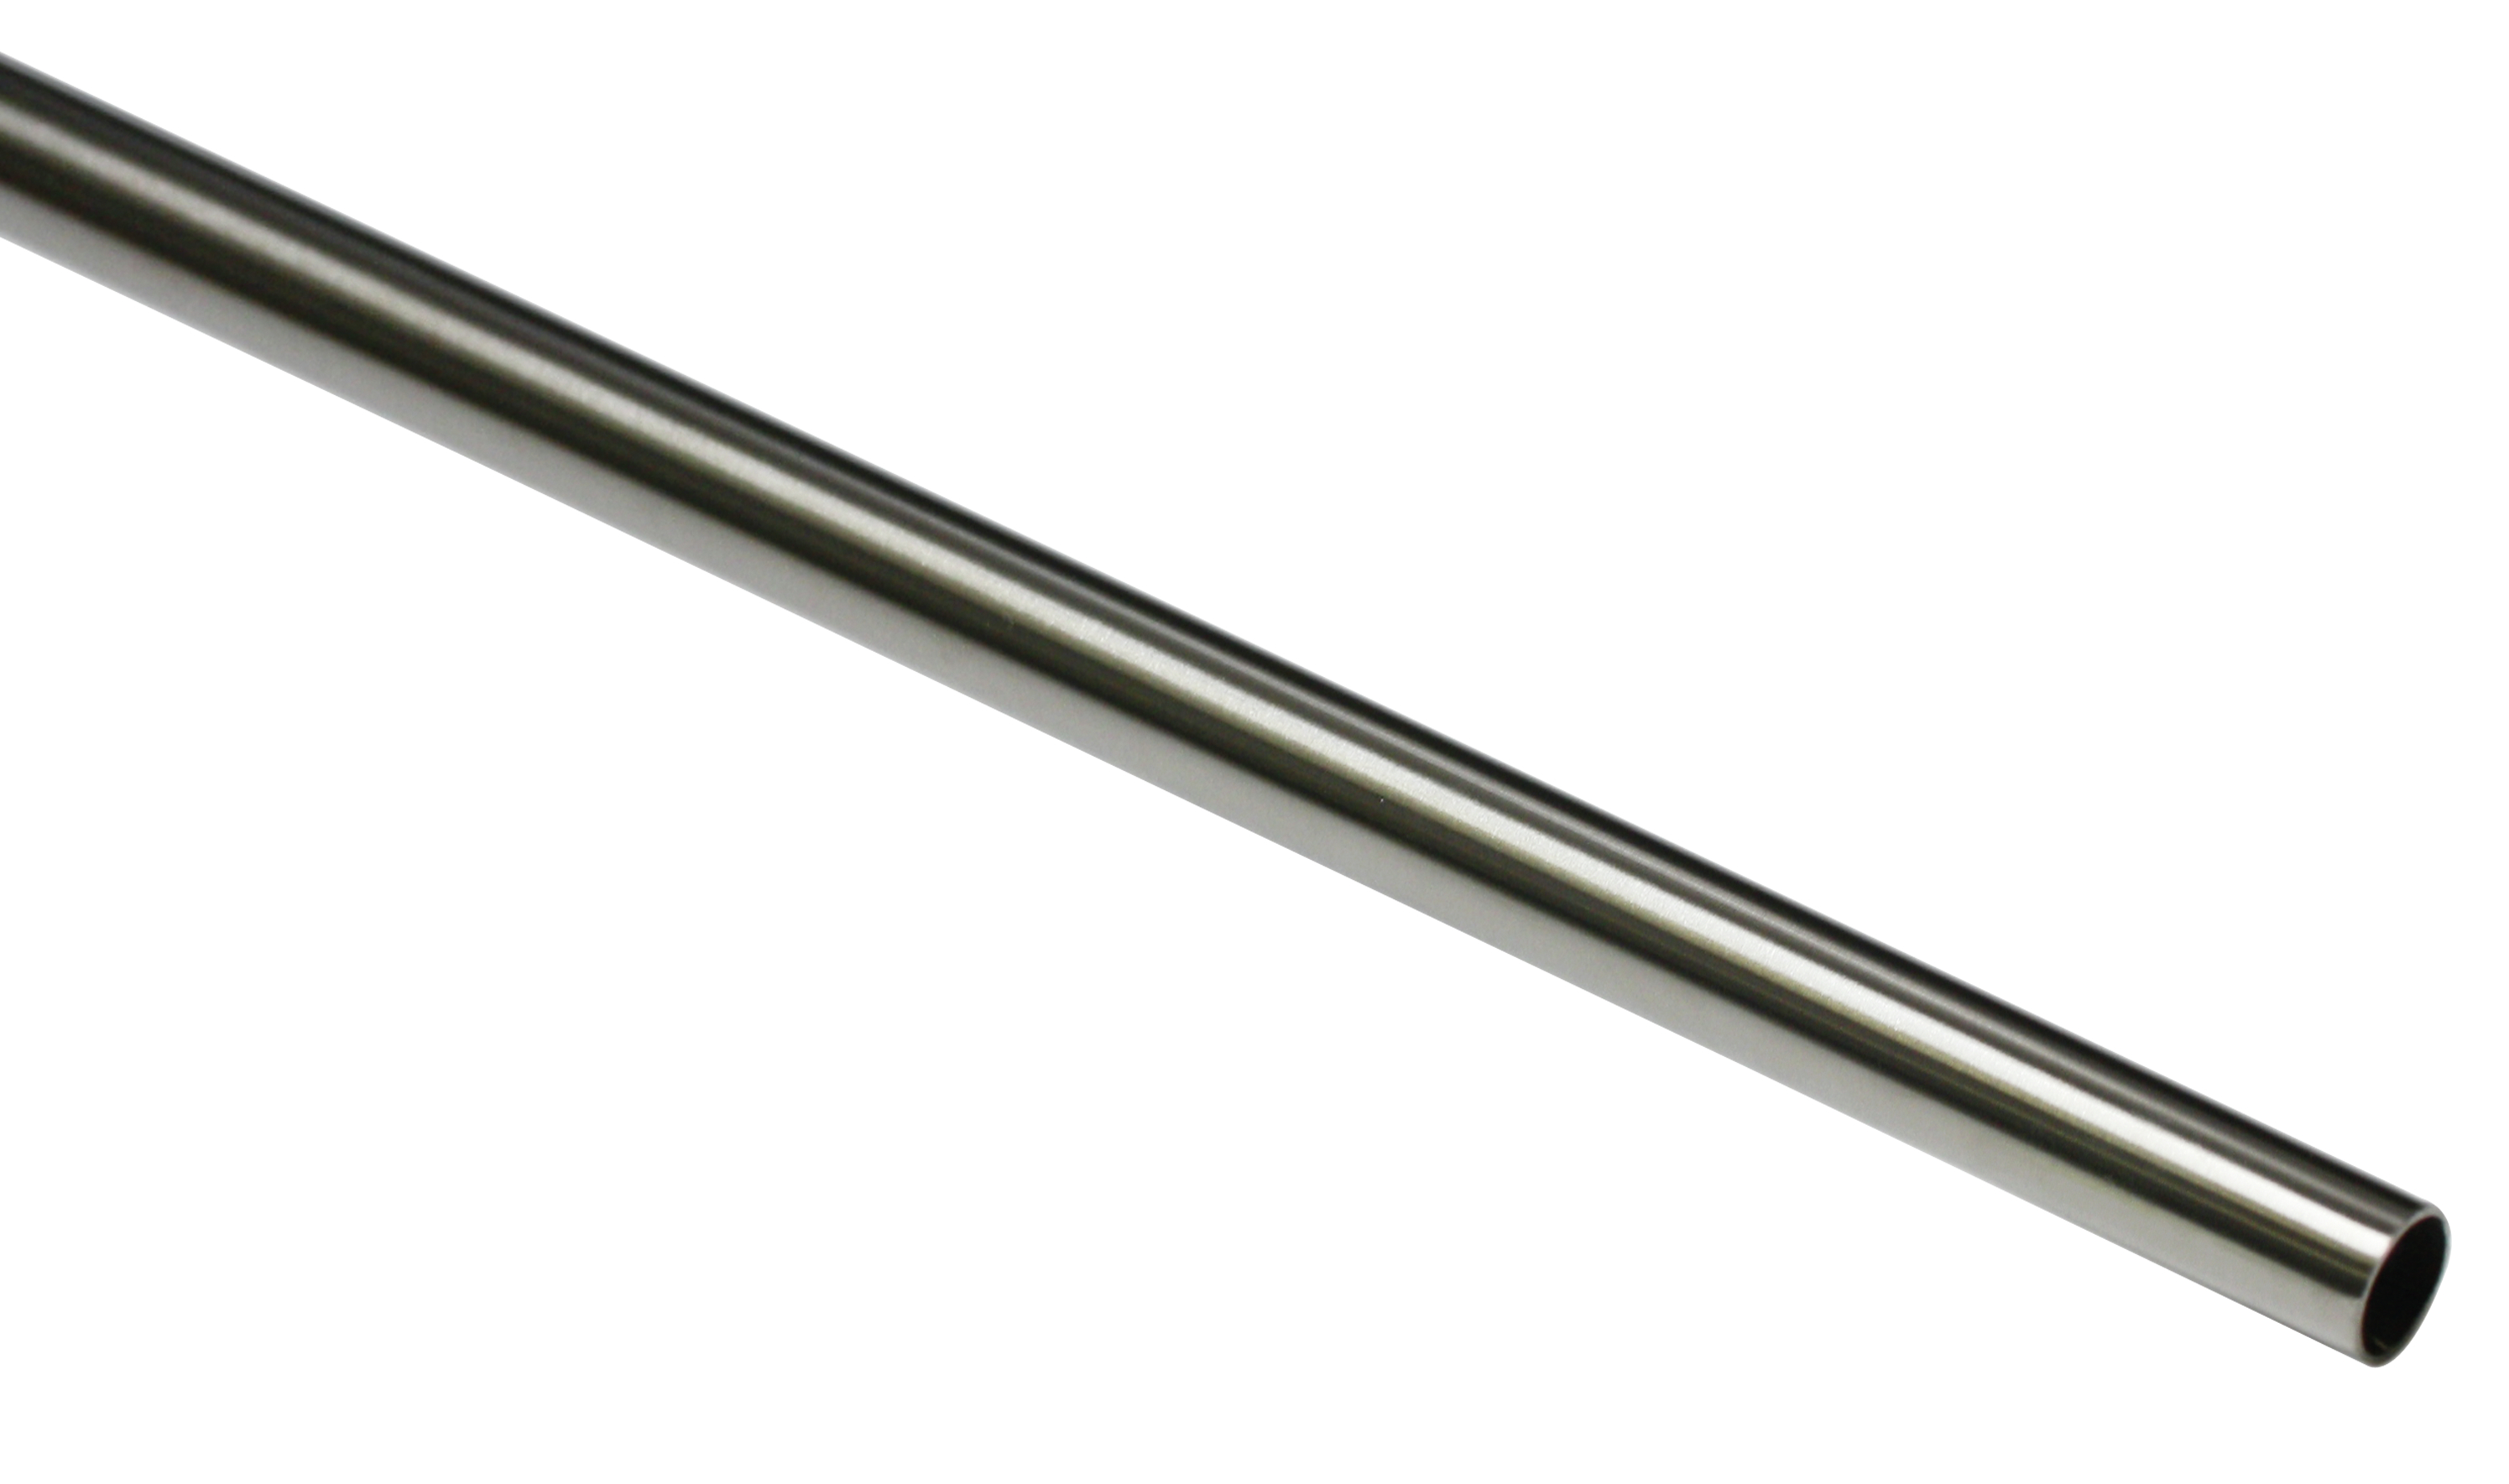 Záclonová tyč New York 12/200cm, ušlechtilá ocel (Ušlechtilá ocel, od délky 200cm doporučujeme třetí nosník.)